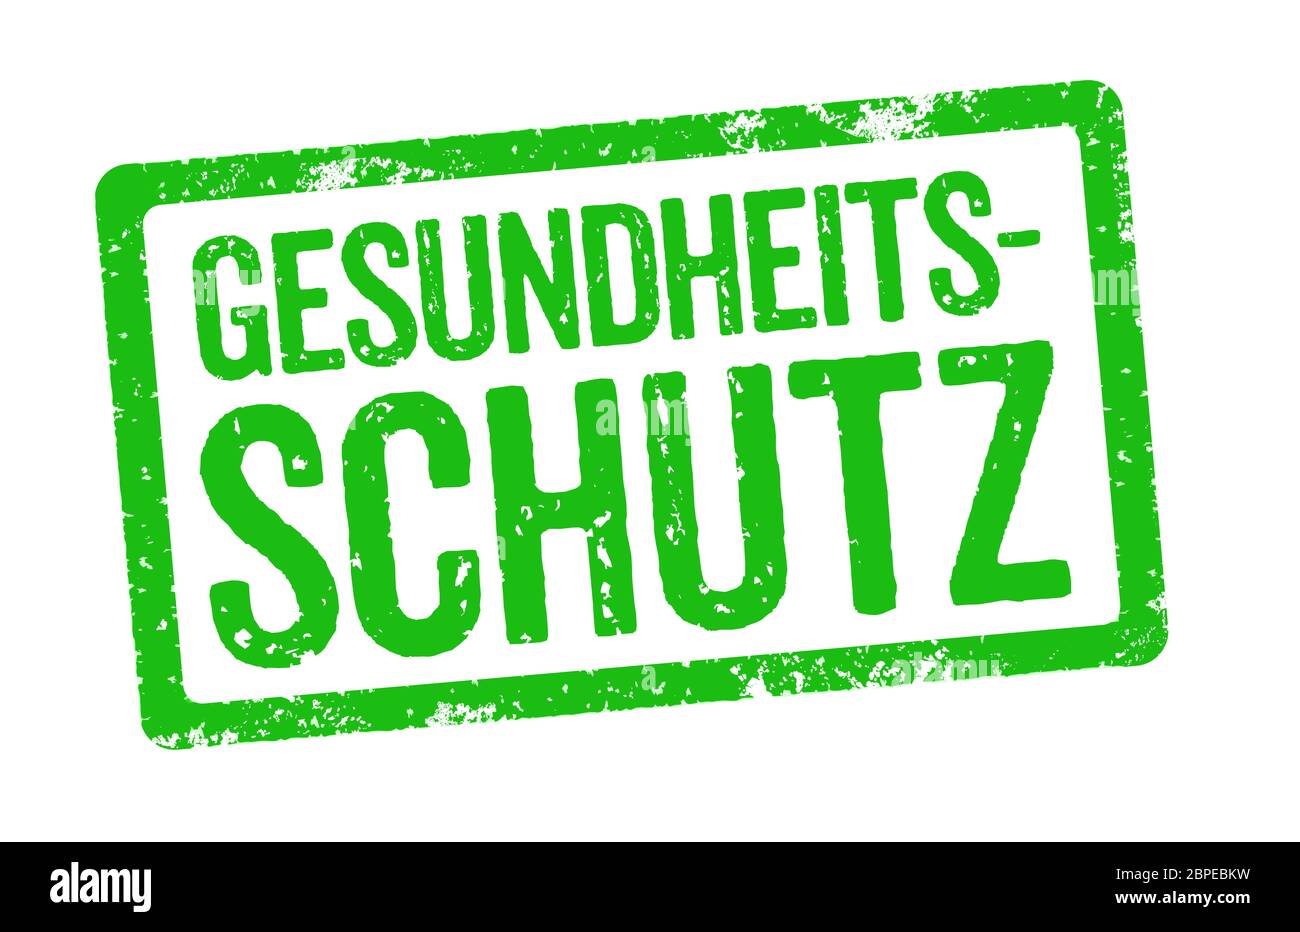 Grüner Stempel - Gesundheitsschutz Stock Photo